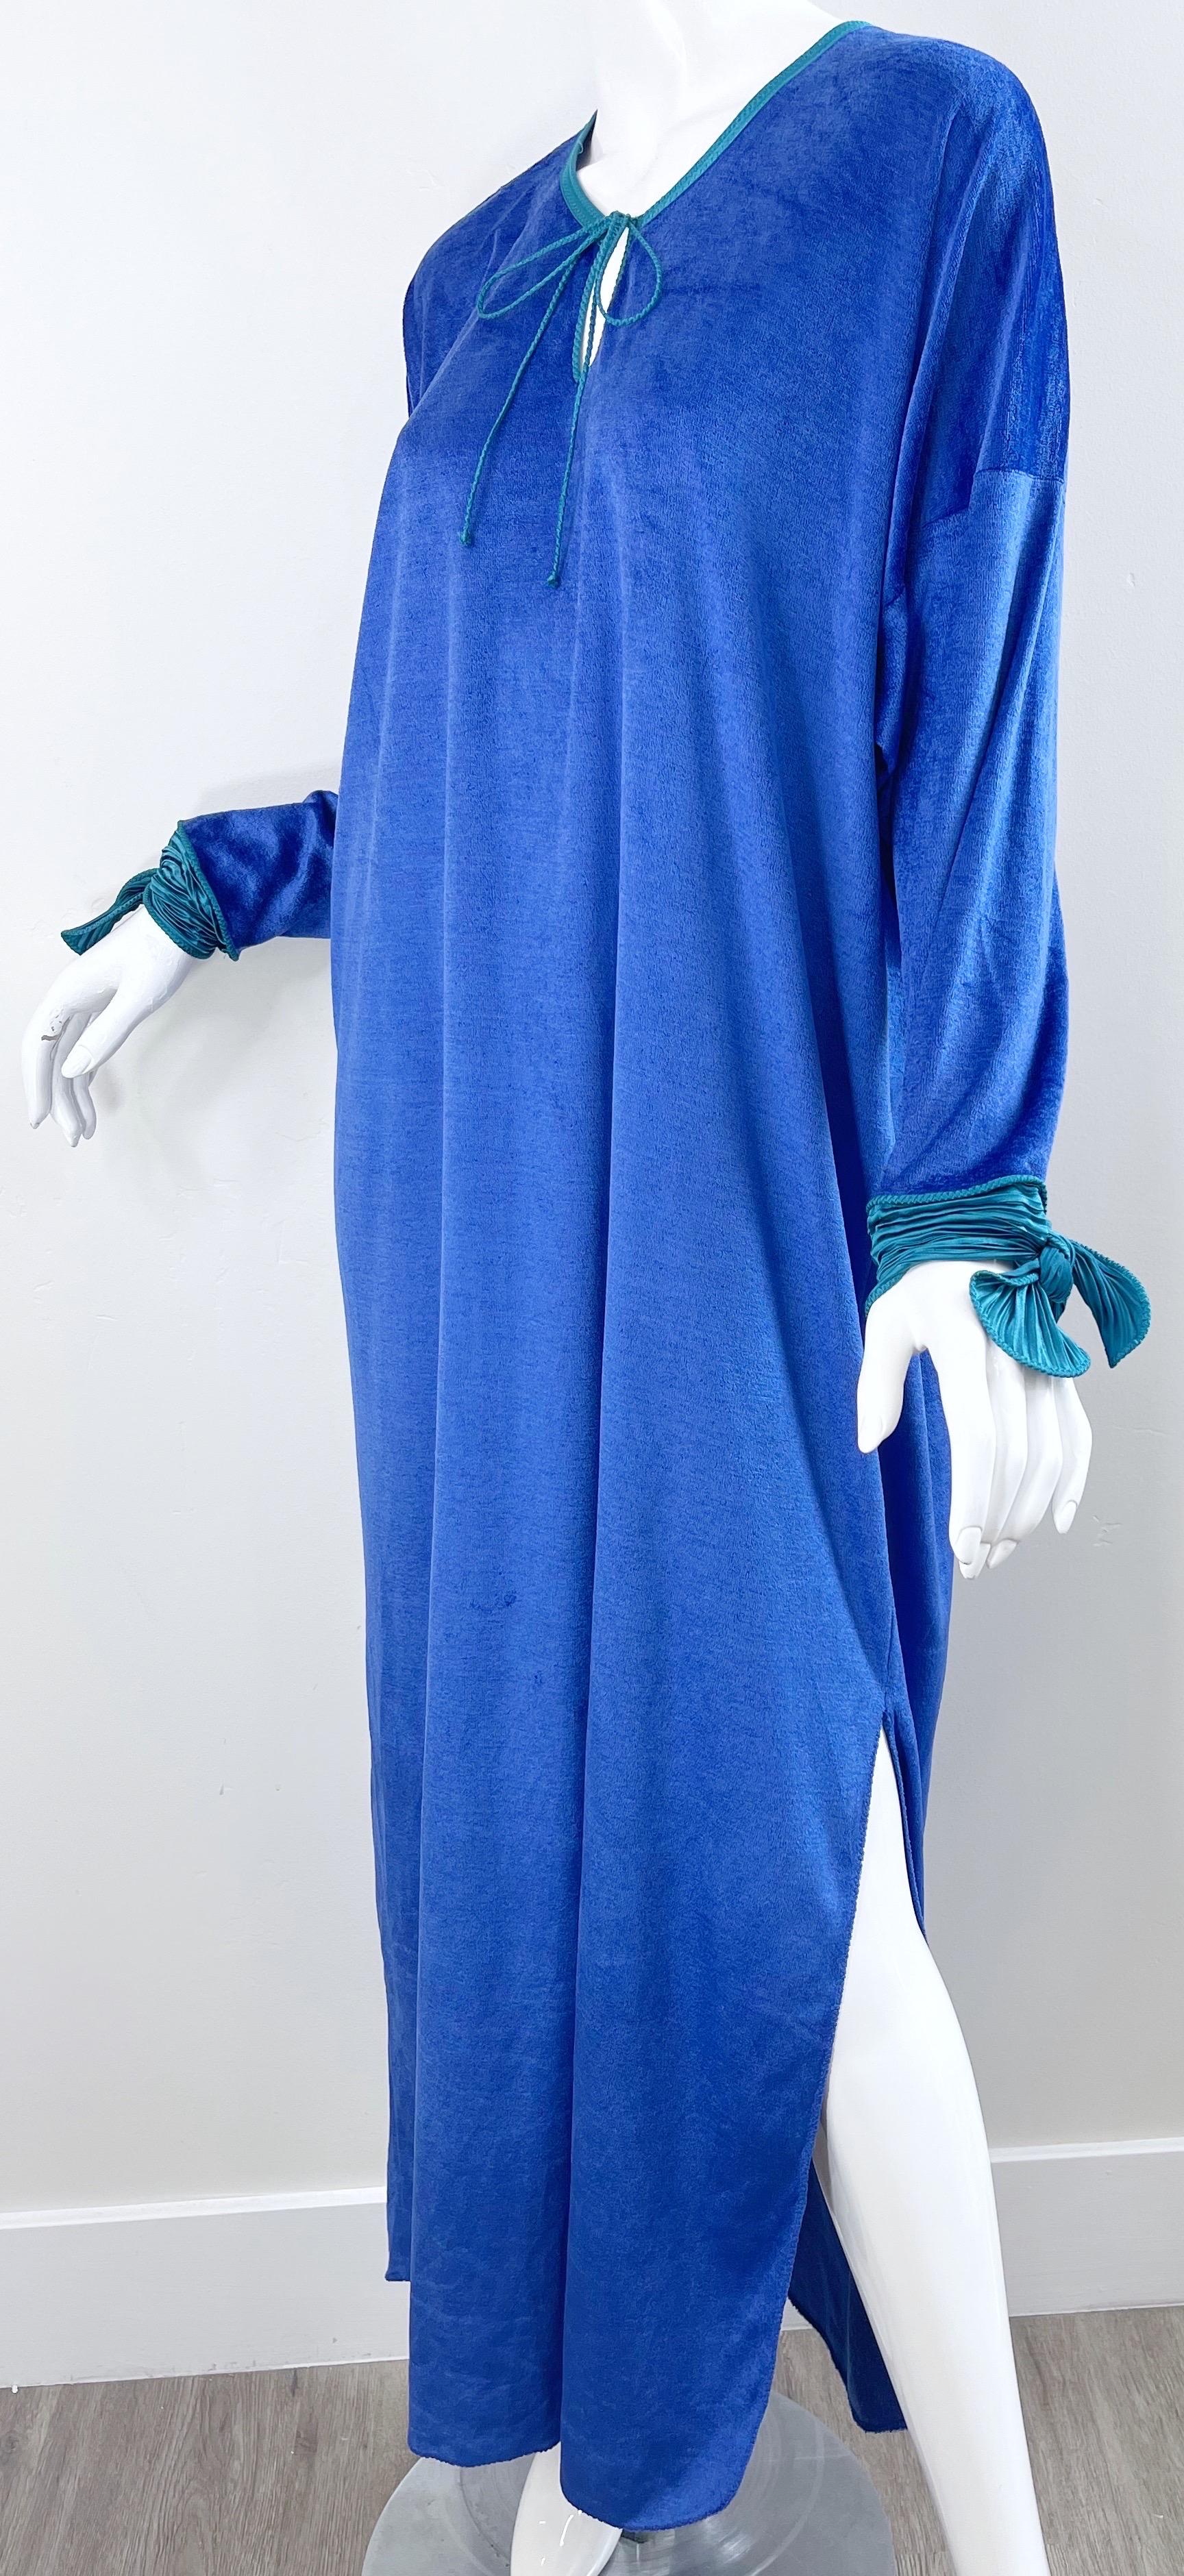 1980s Mary McFadden Royal Blue Teal Velour Vintage 80s Caftan Maxi Dress Kaftan For Sale 2